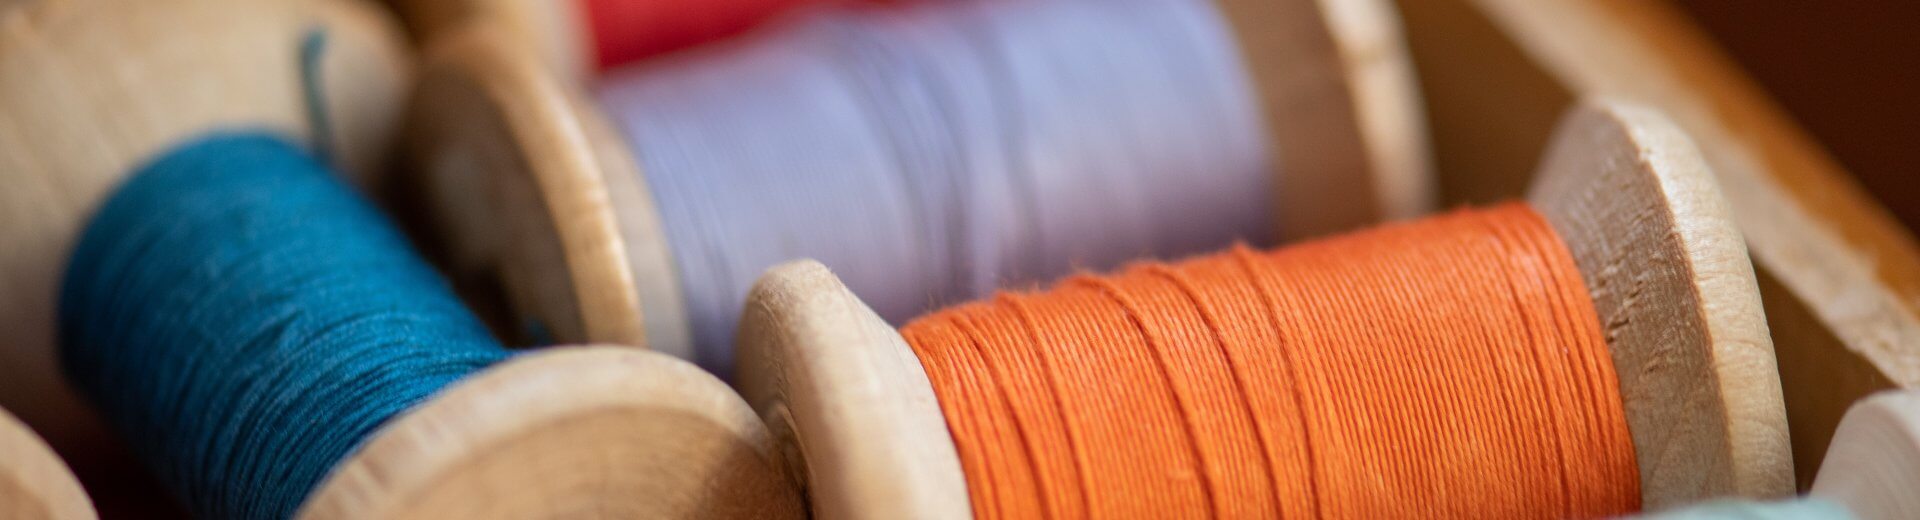 L'ARMOIRE SANS FIN - Troc & ateliers textiles ° Mode circulaire